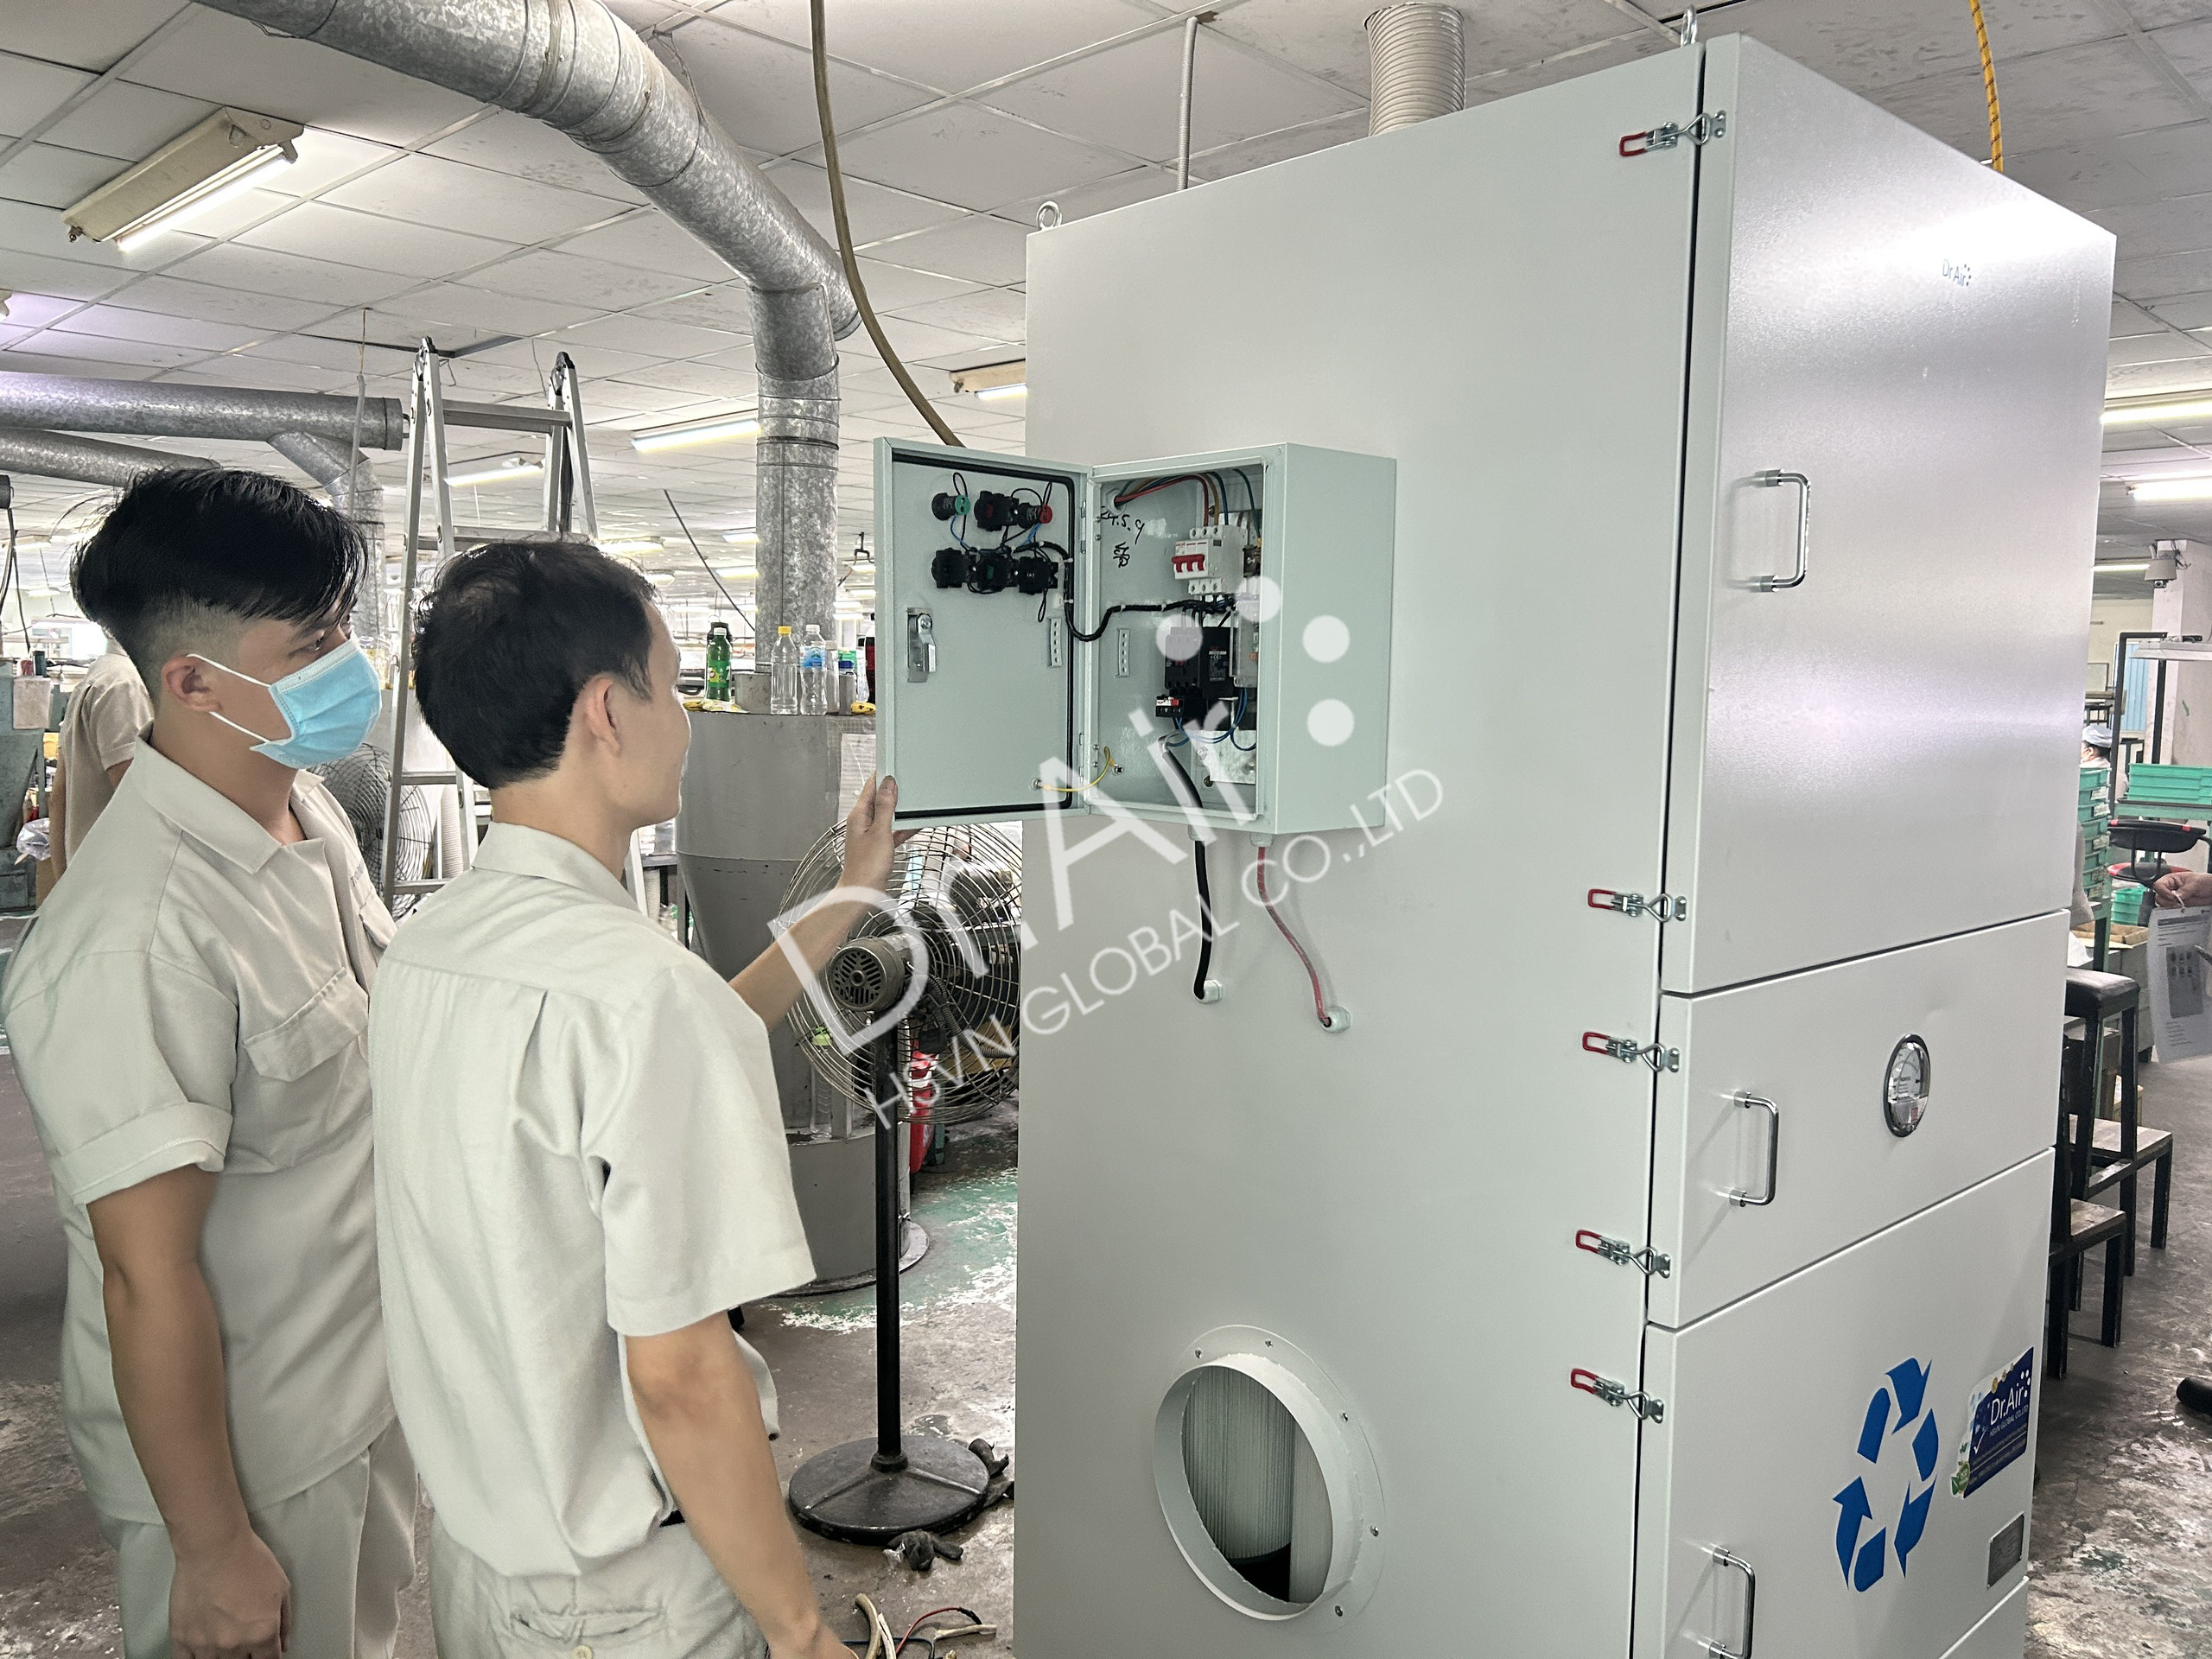 Máy lọc bụi công nghiệp Dr.Air KHC xử lý khói bụi cho nhà máy khu chế xuất Tân Thuận.